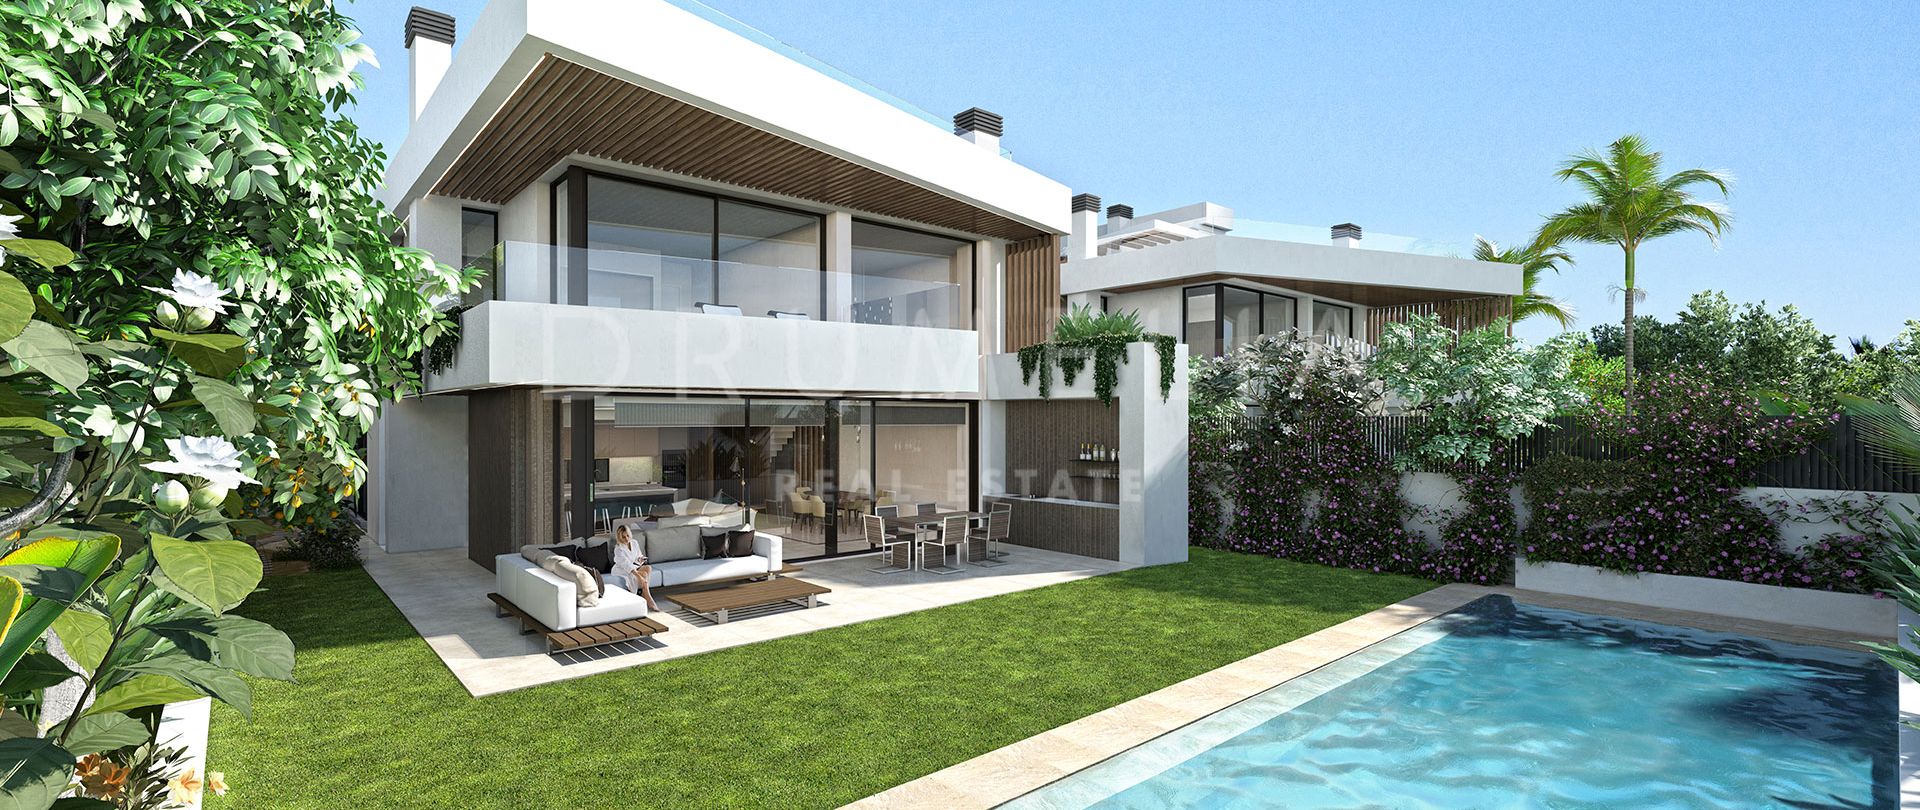 Modern high-end villaproject met luxe voorzieningen en avant-garde accenten in Puerto Banus, Marbella